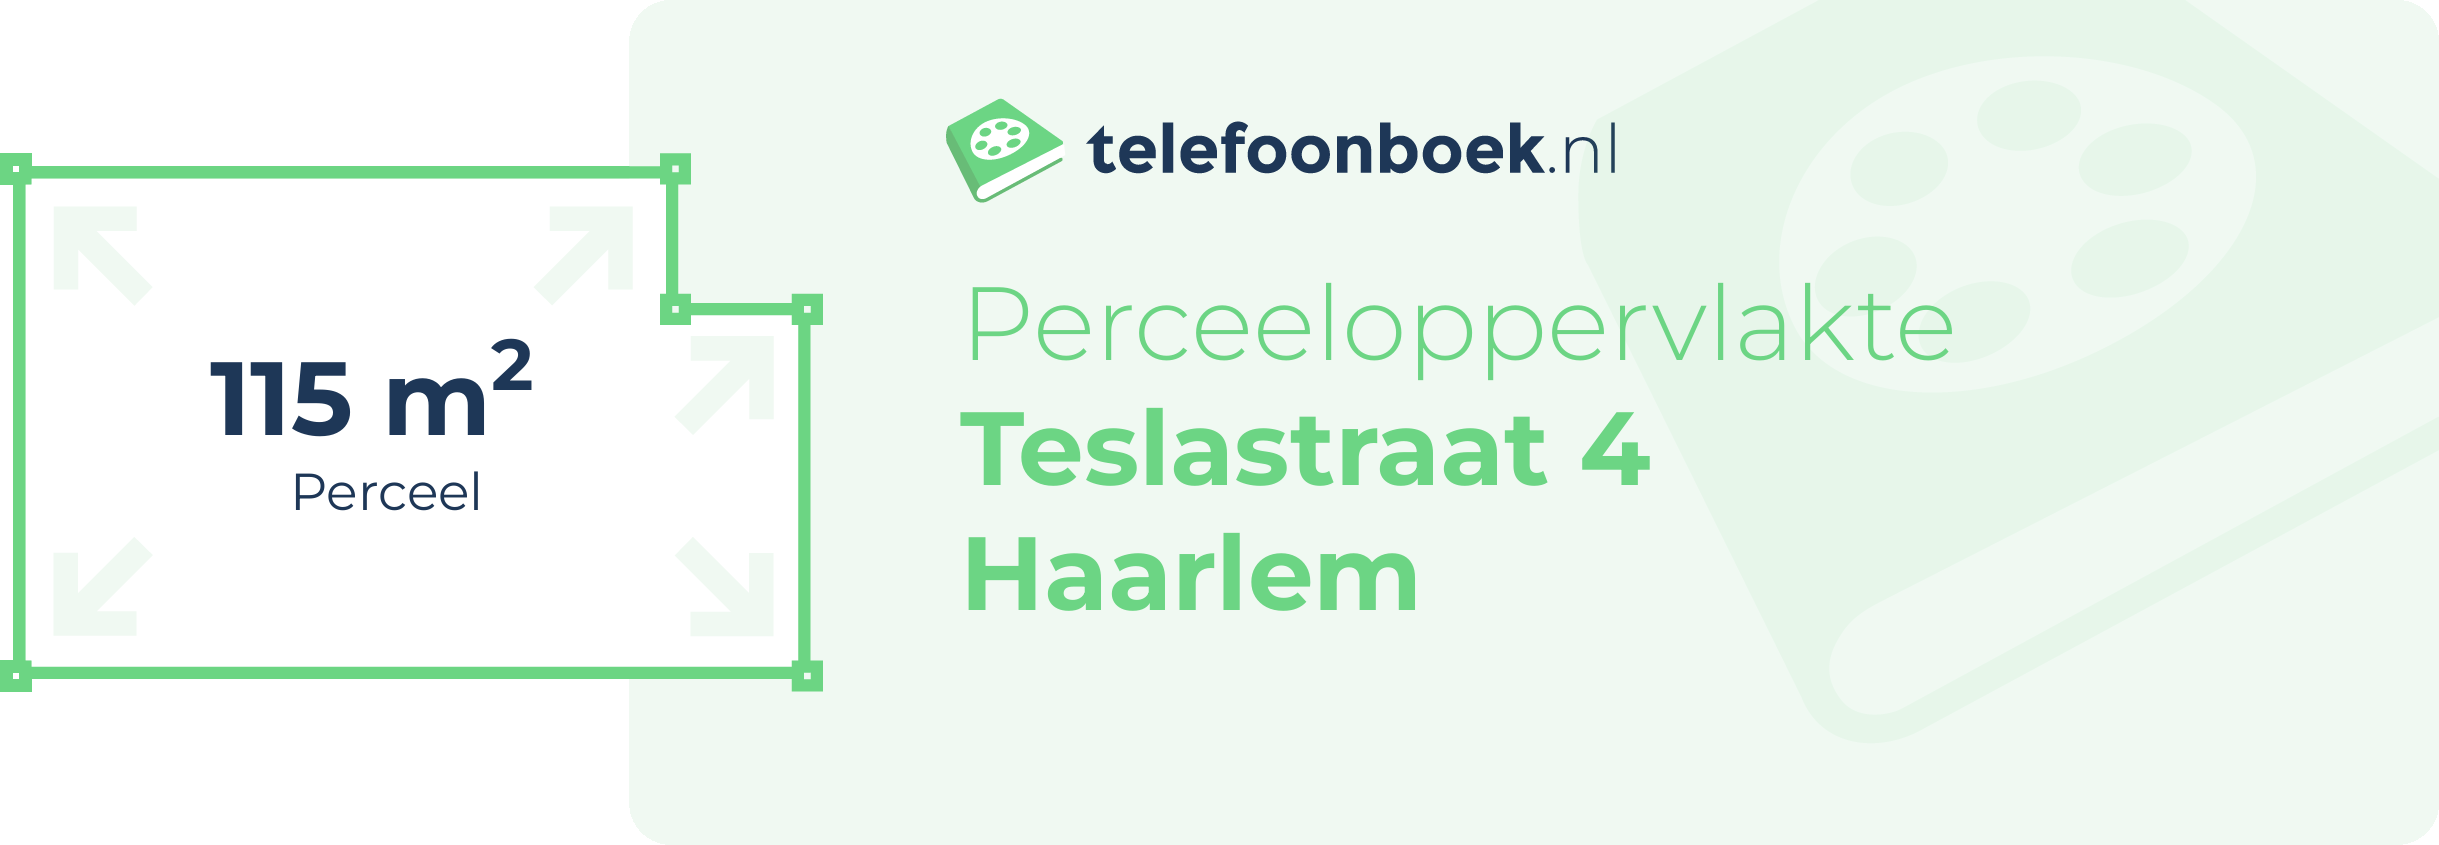 Perceeloppervlakte Teslastraat 4 Haarlem